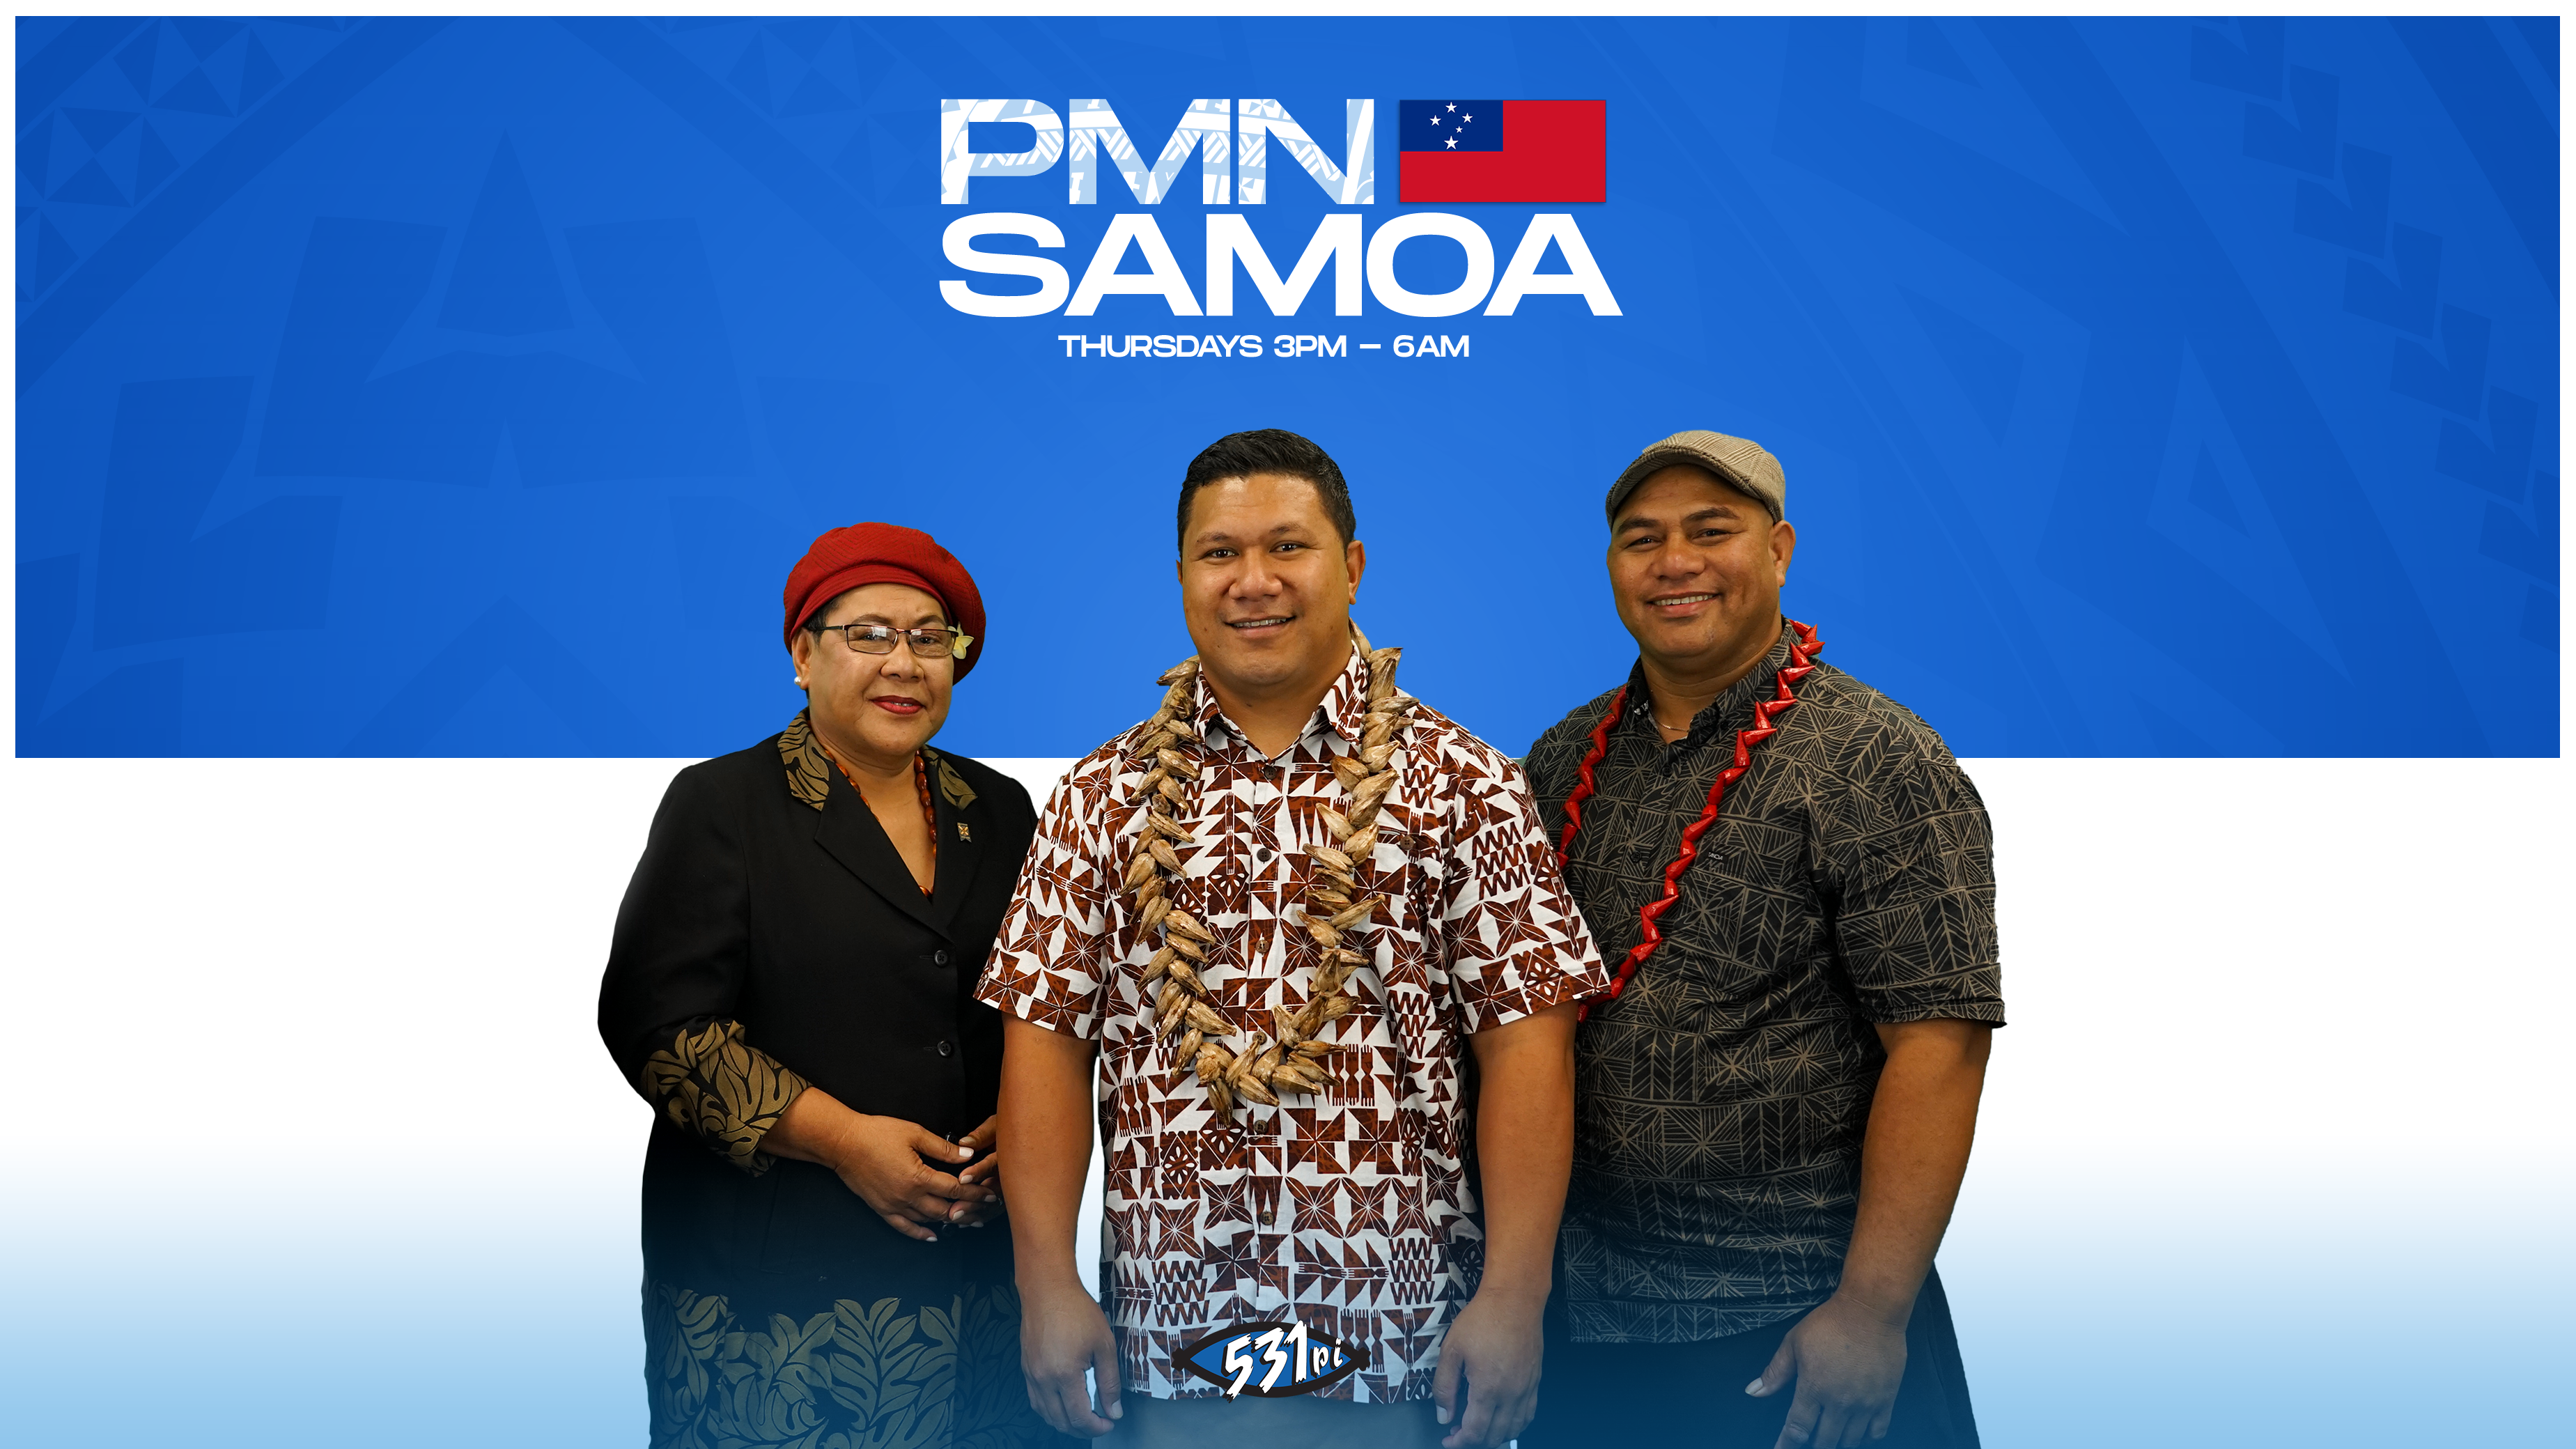 Daily News in Samoan